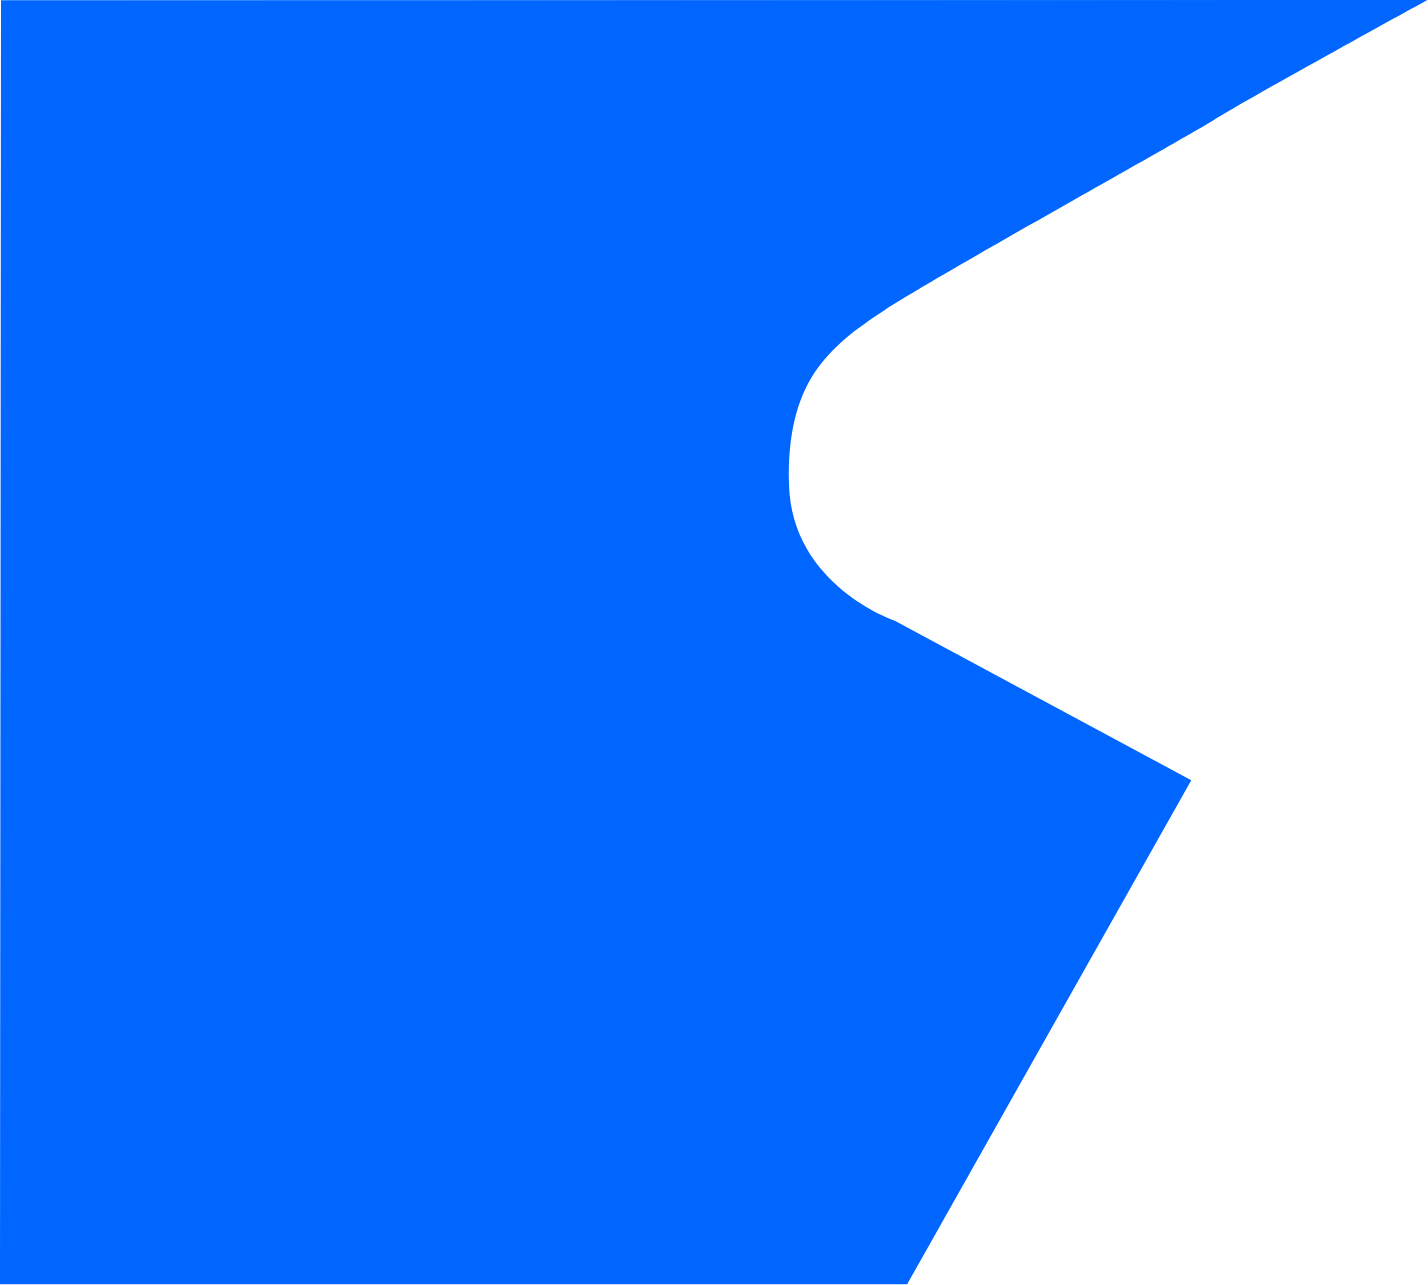 Hero logo blue background shape